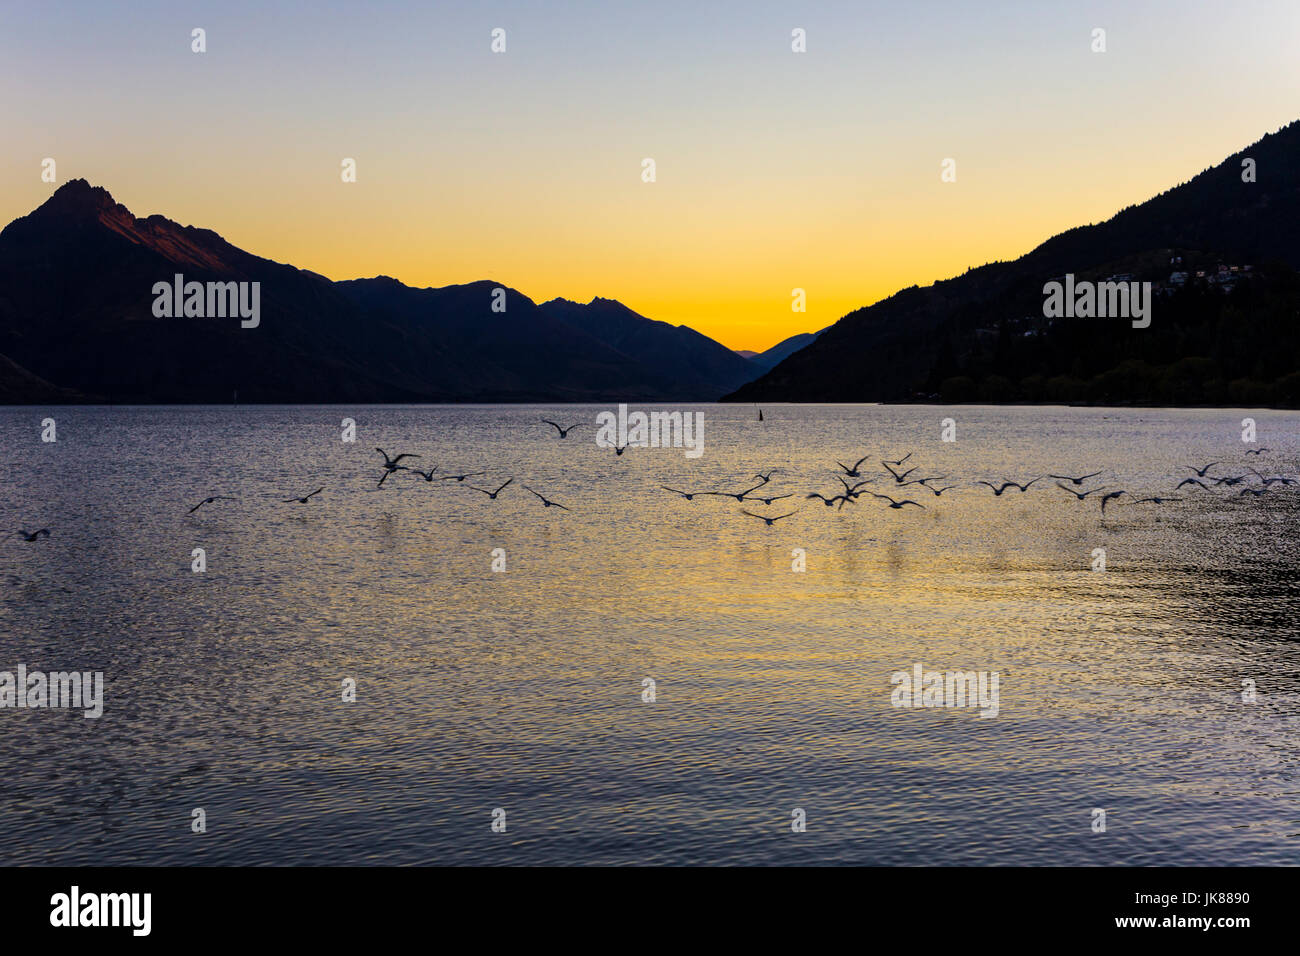 Silhouettes des montagnes et oiseaux volant au-dessus d'un lac au coucher du soleil, (le lac Wakatipu, Queenstown, île du Sud, Nouvelle-Zélande) Banque D'Images